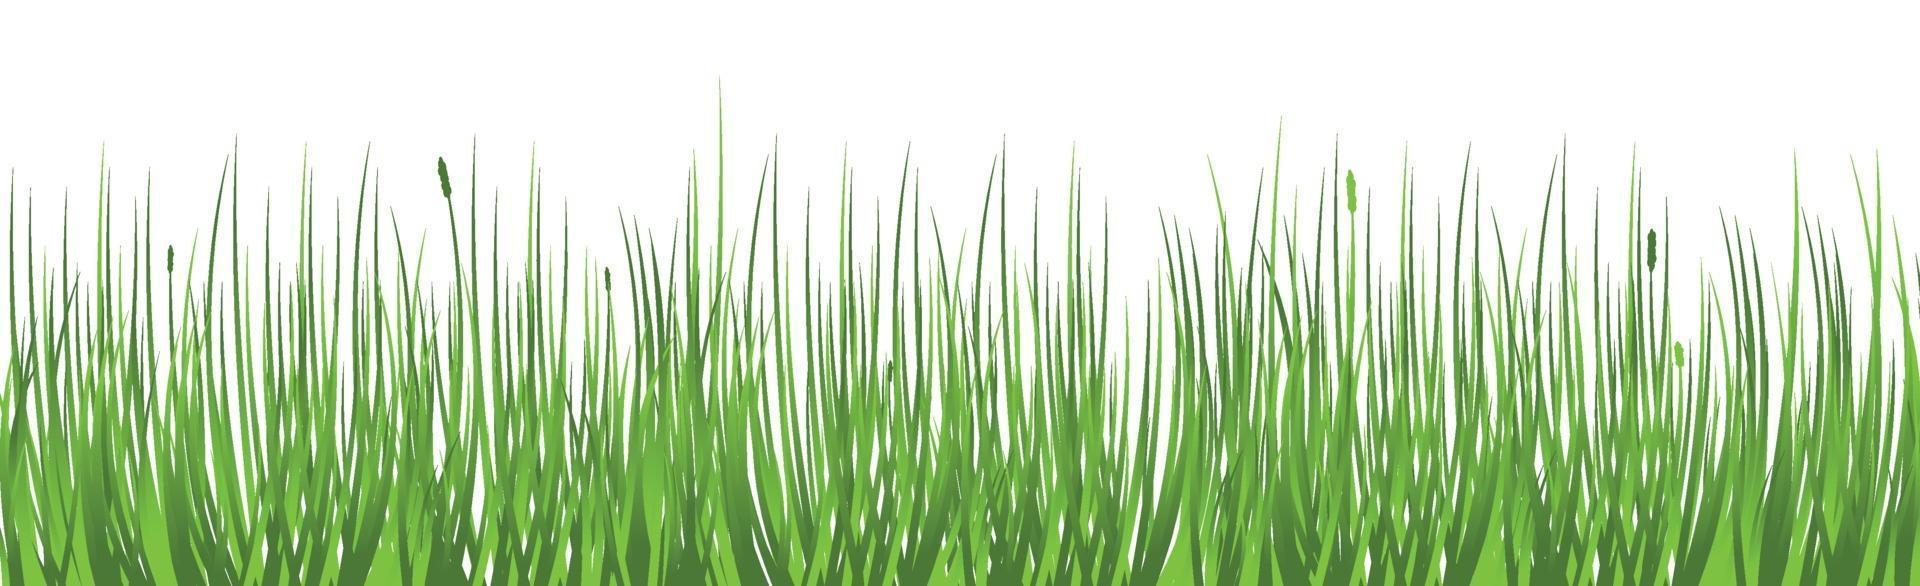 herbe juteuse verte sur fond blanc vecteur